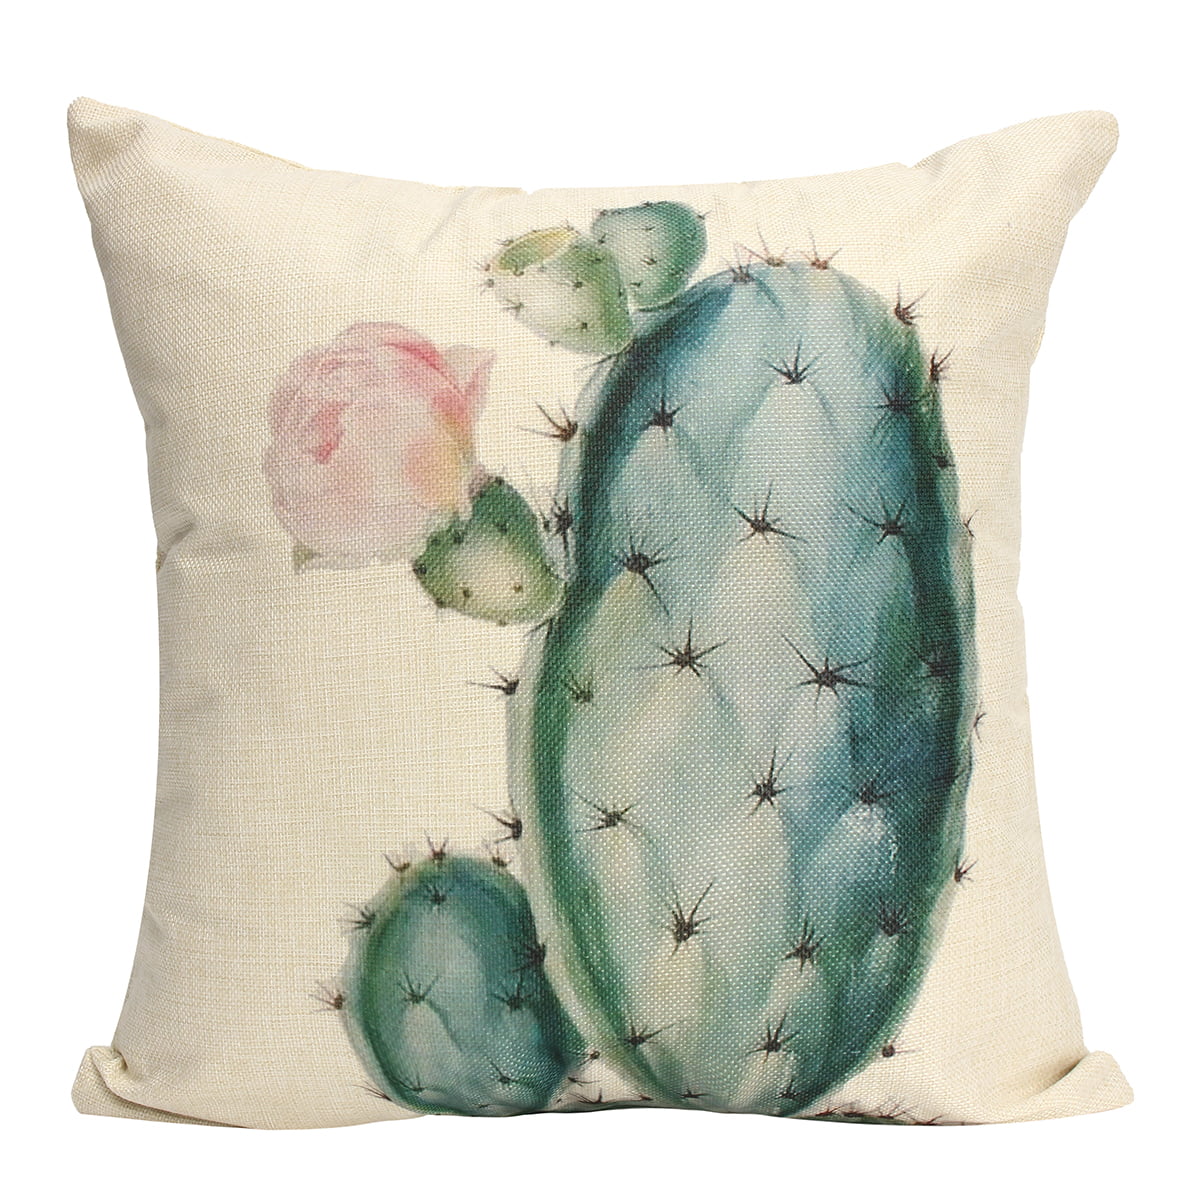 Retro Cactus Succulent Cotton Linen Plants Pillow Case Throw Cushion Cover Decor